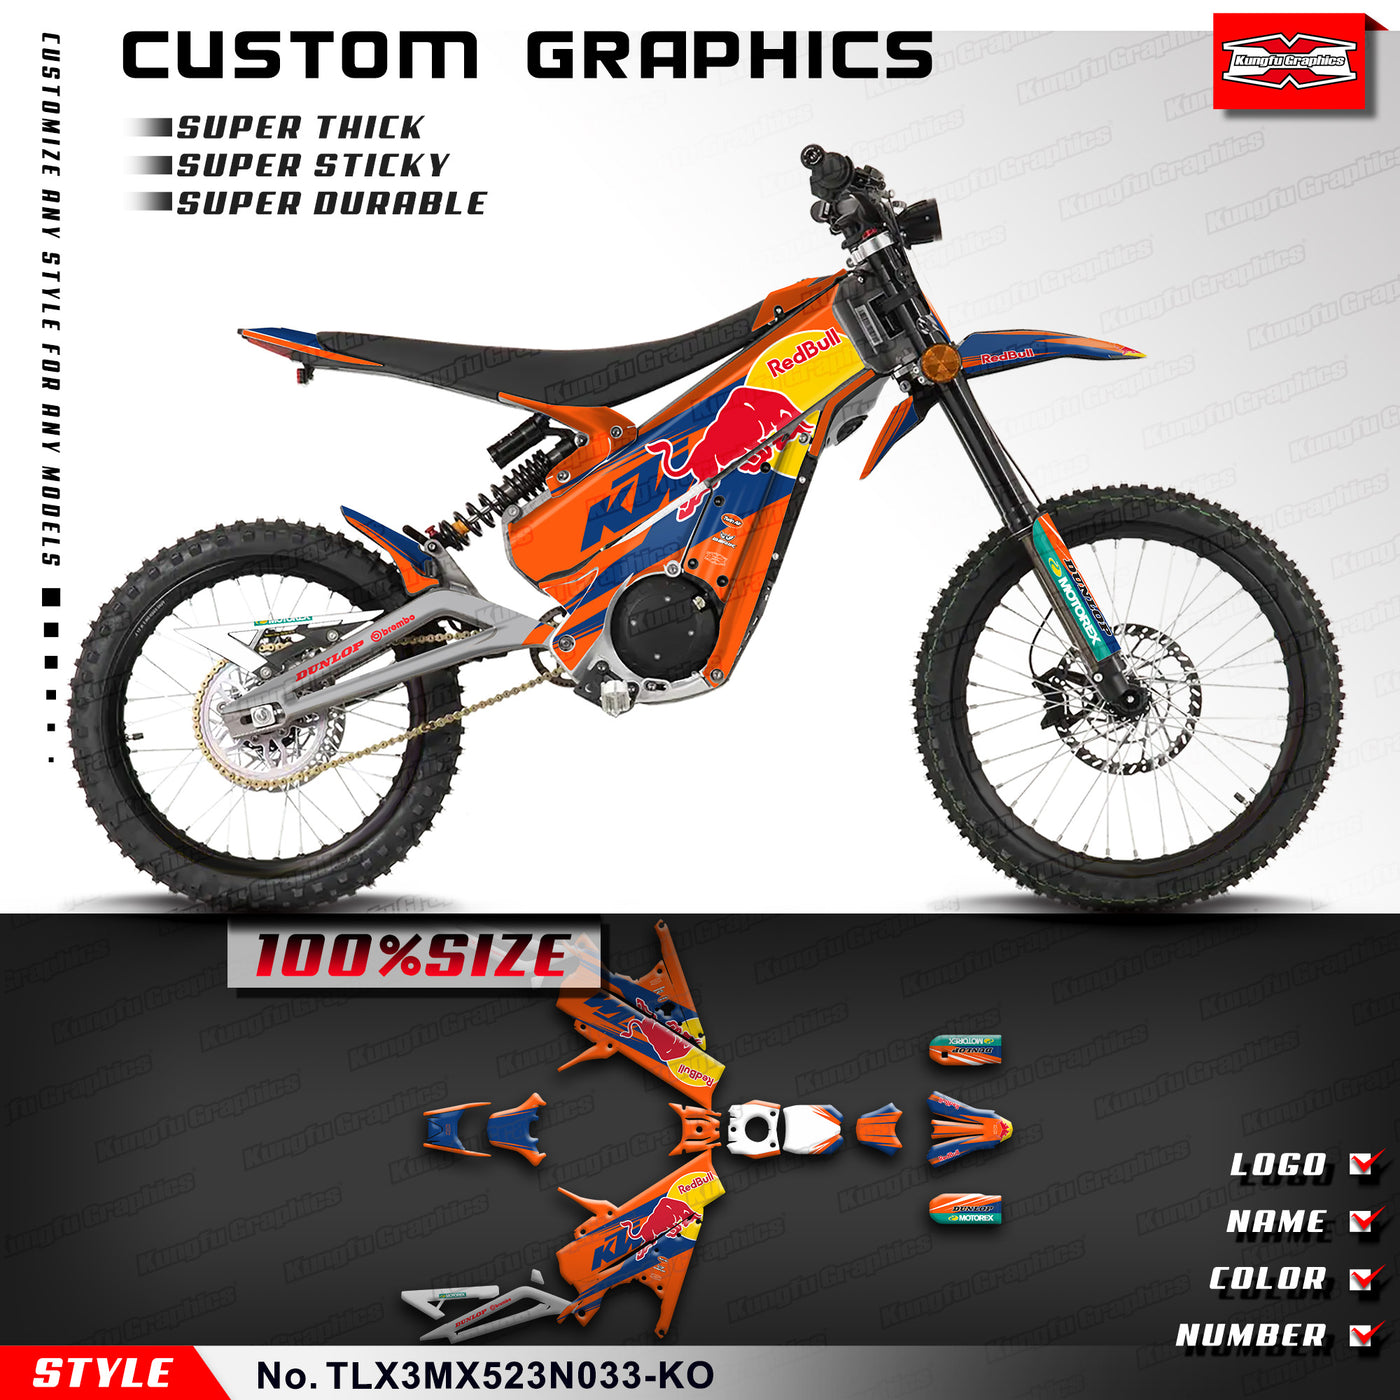 Graphics Custom Decal Kit for Talaria Dirt Bike X3 XXX